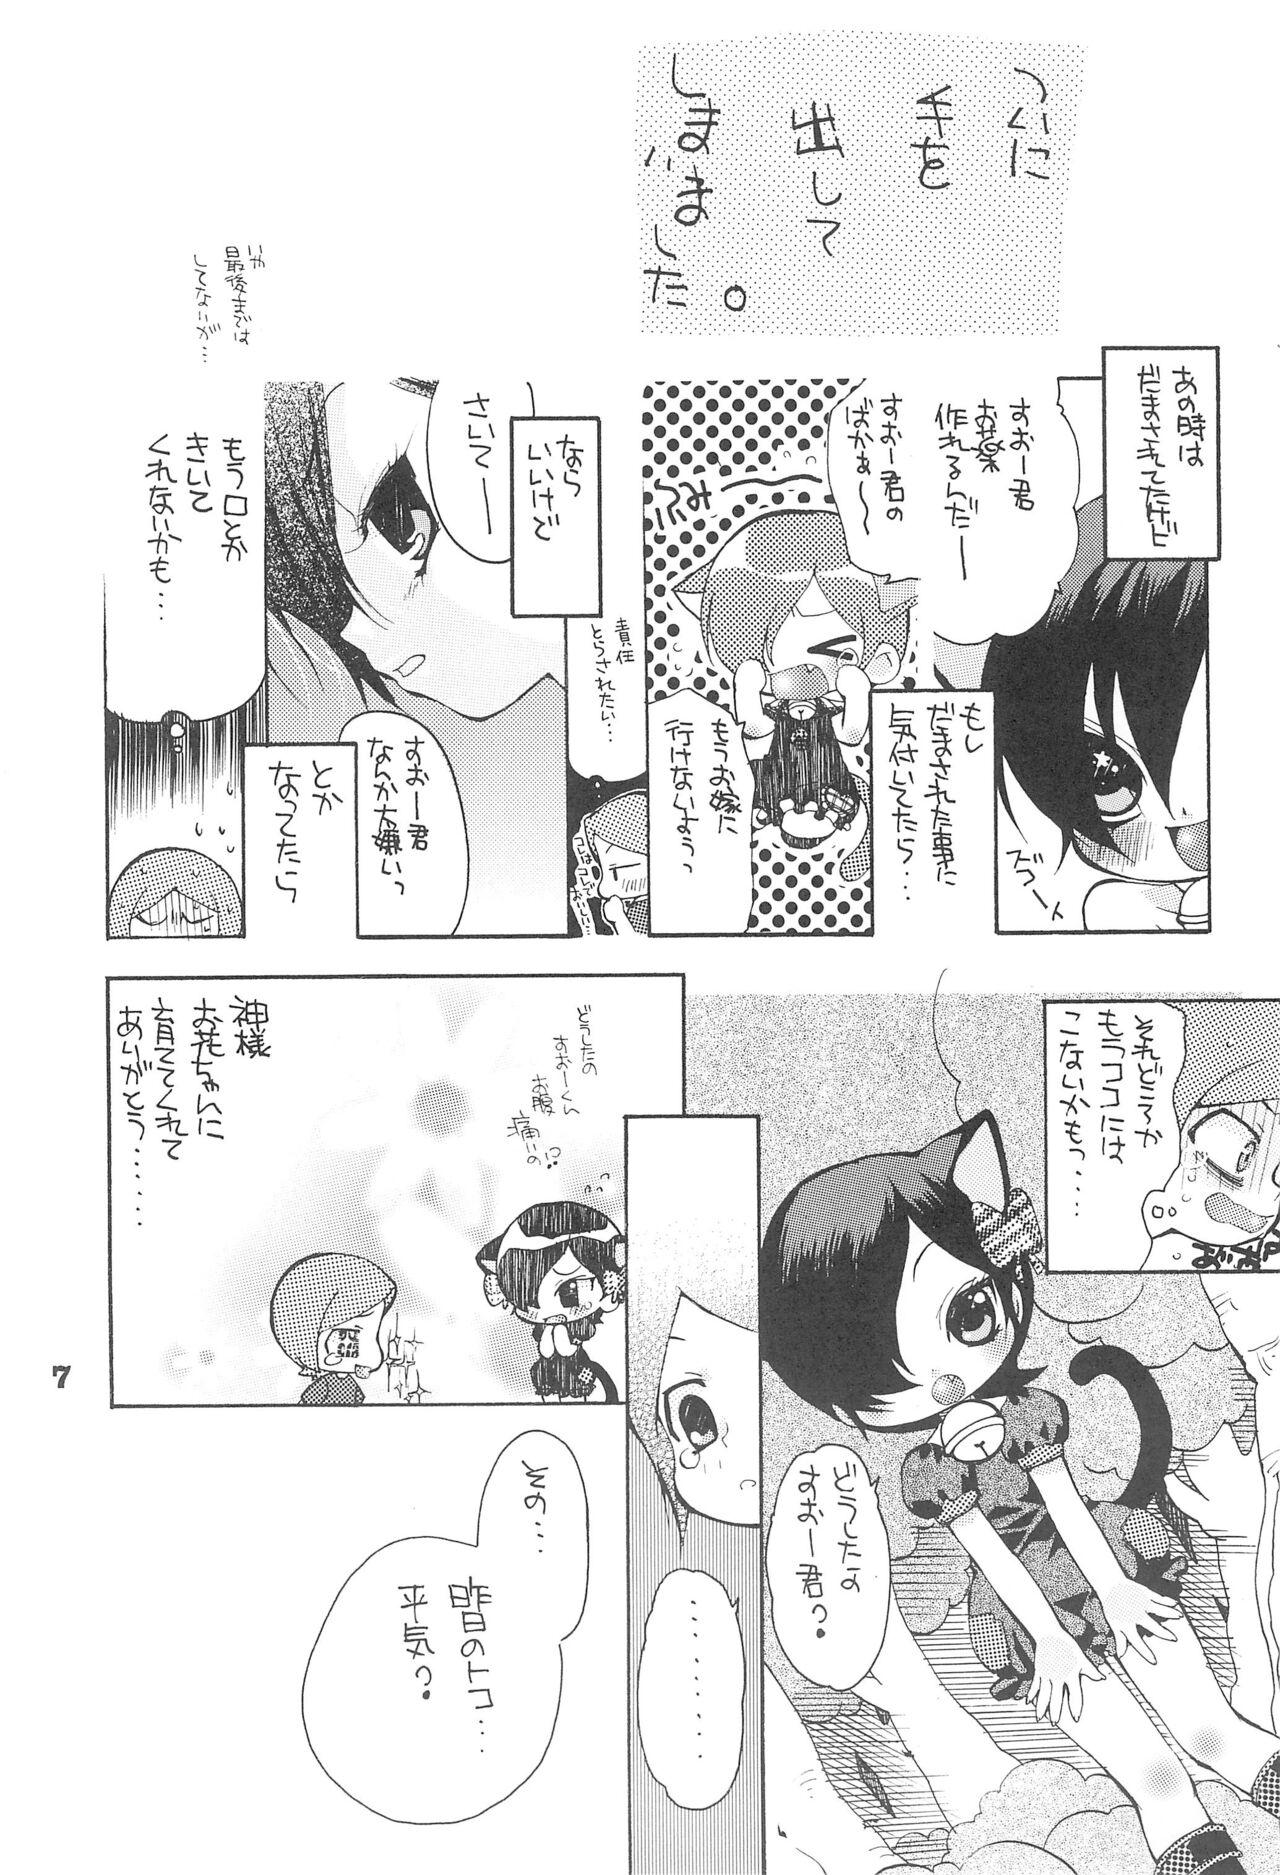 Chibola Yuuyake Nyan nyan - Original Francais - Page 9